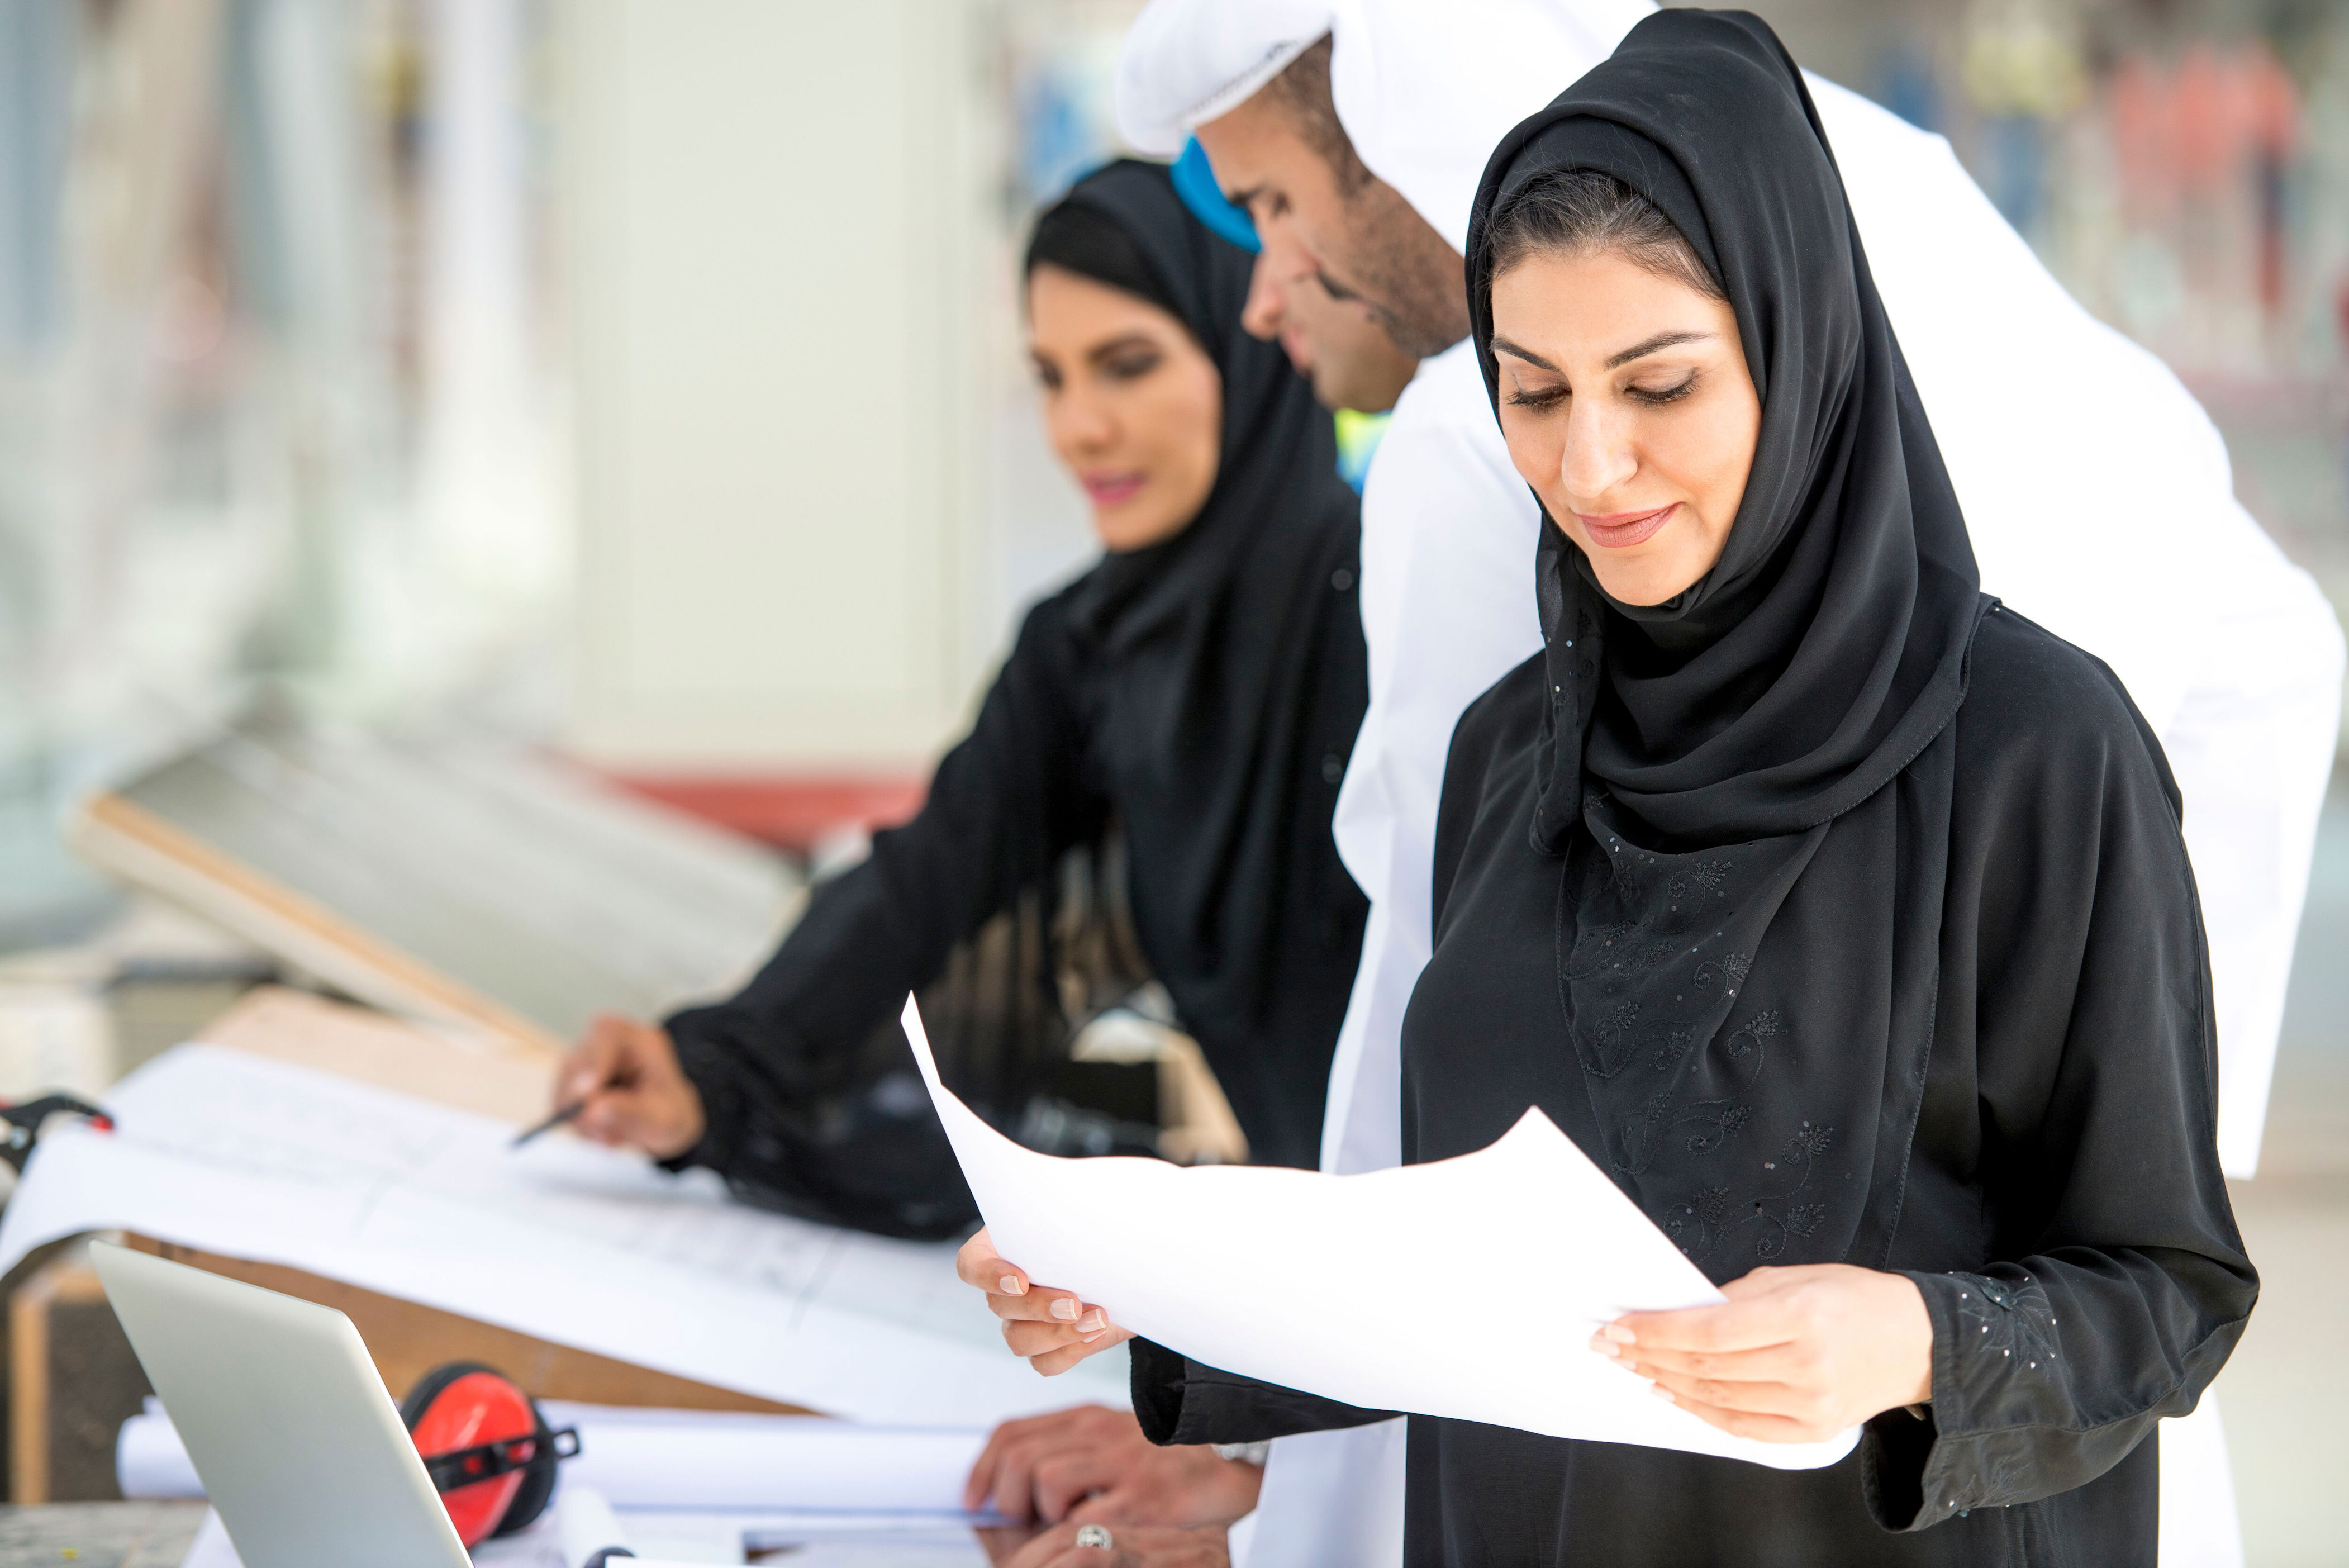 ОАЭ. Мигранты в ОАЭ. Бесплатное обучение в ОАЭ для граждан. Uae company